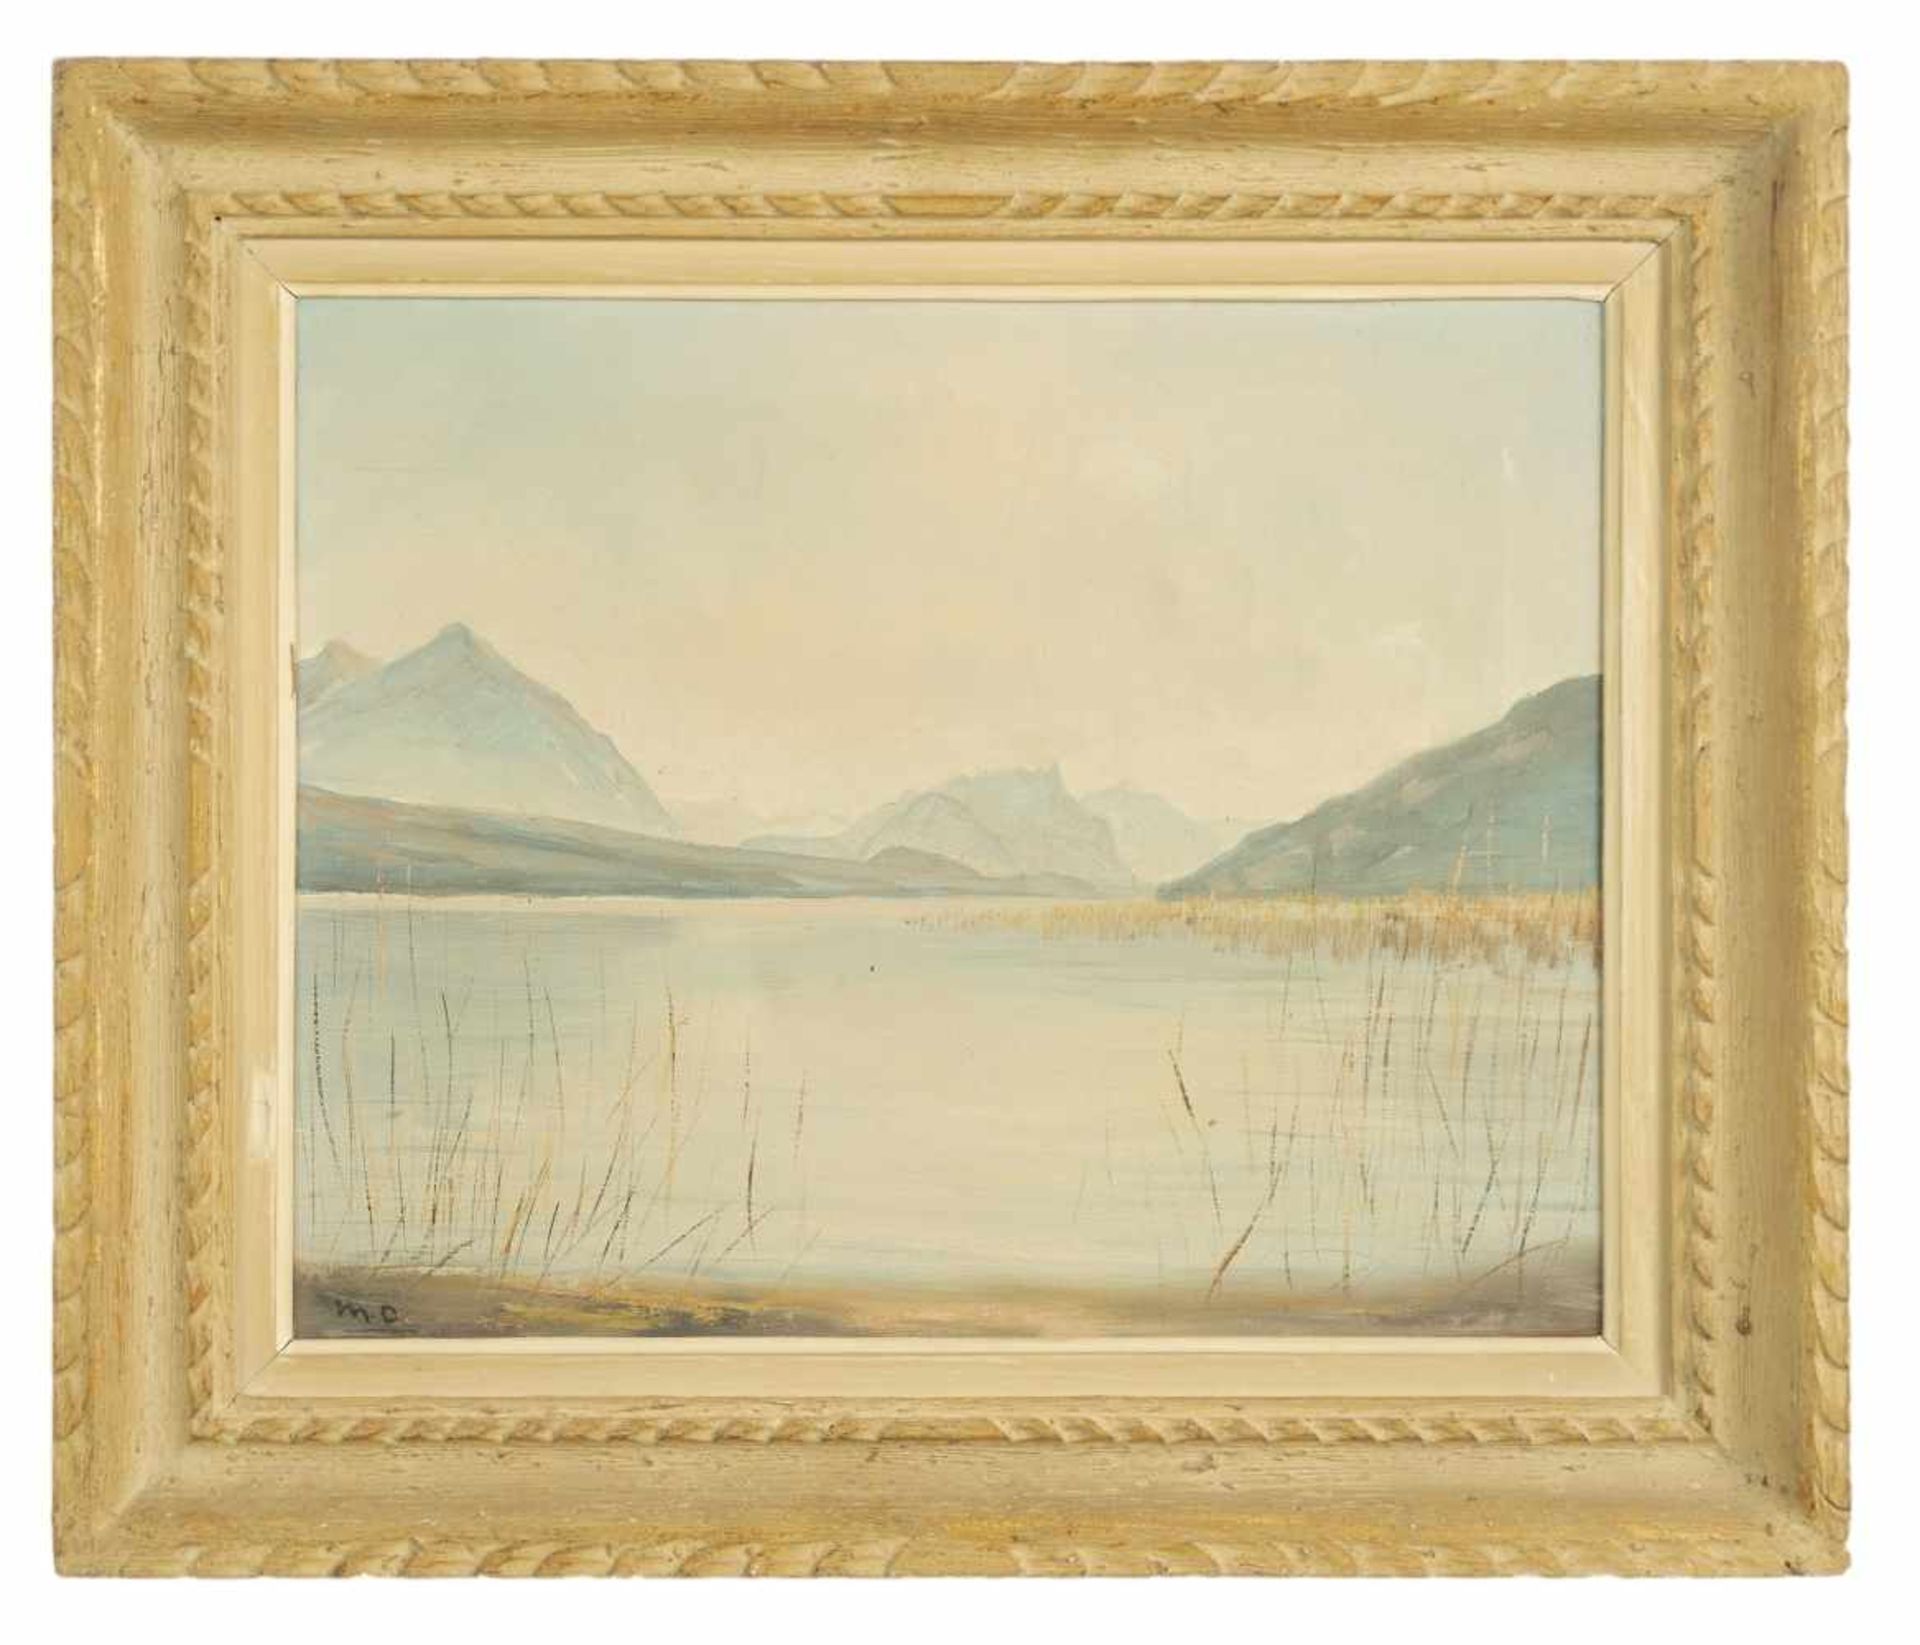 Schweizer MalerBlick über den Thuner SeeÖl / Leinwand, unten links monogrammiert "M.O."40 x 50 cm, - Image 2 of 2